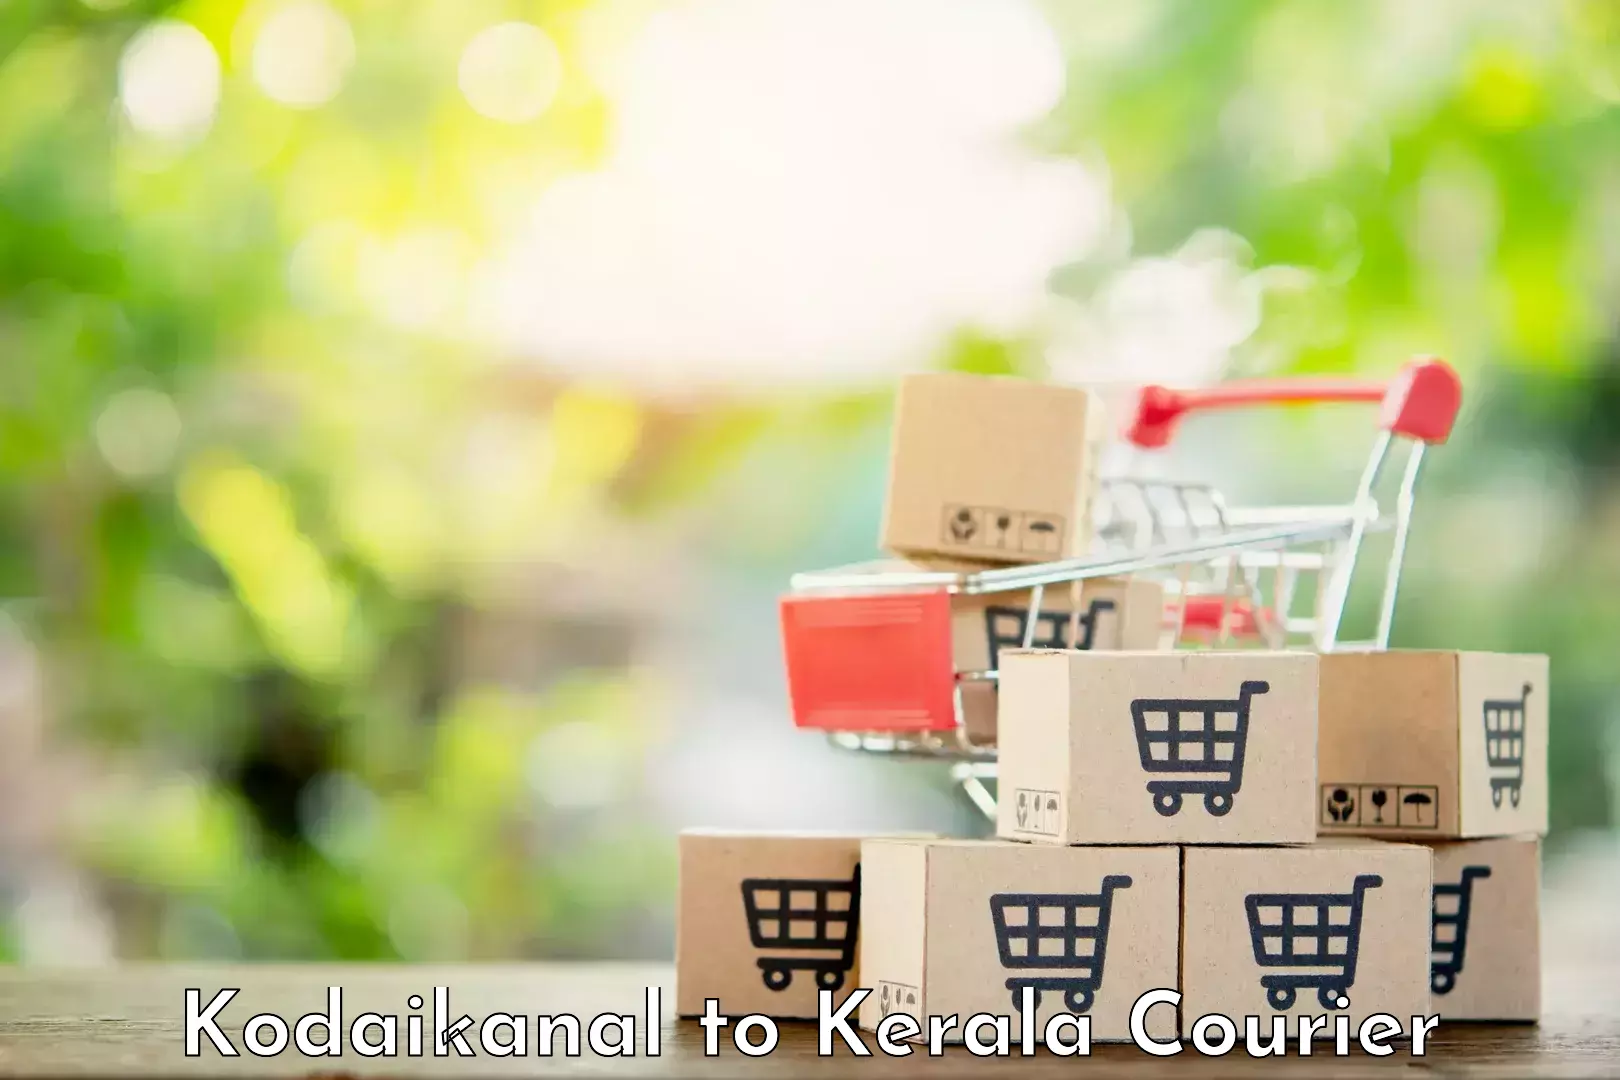 Versatile courier options Kodaikanal to Kerala